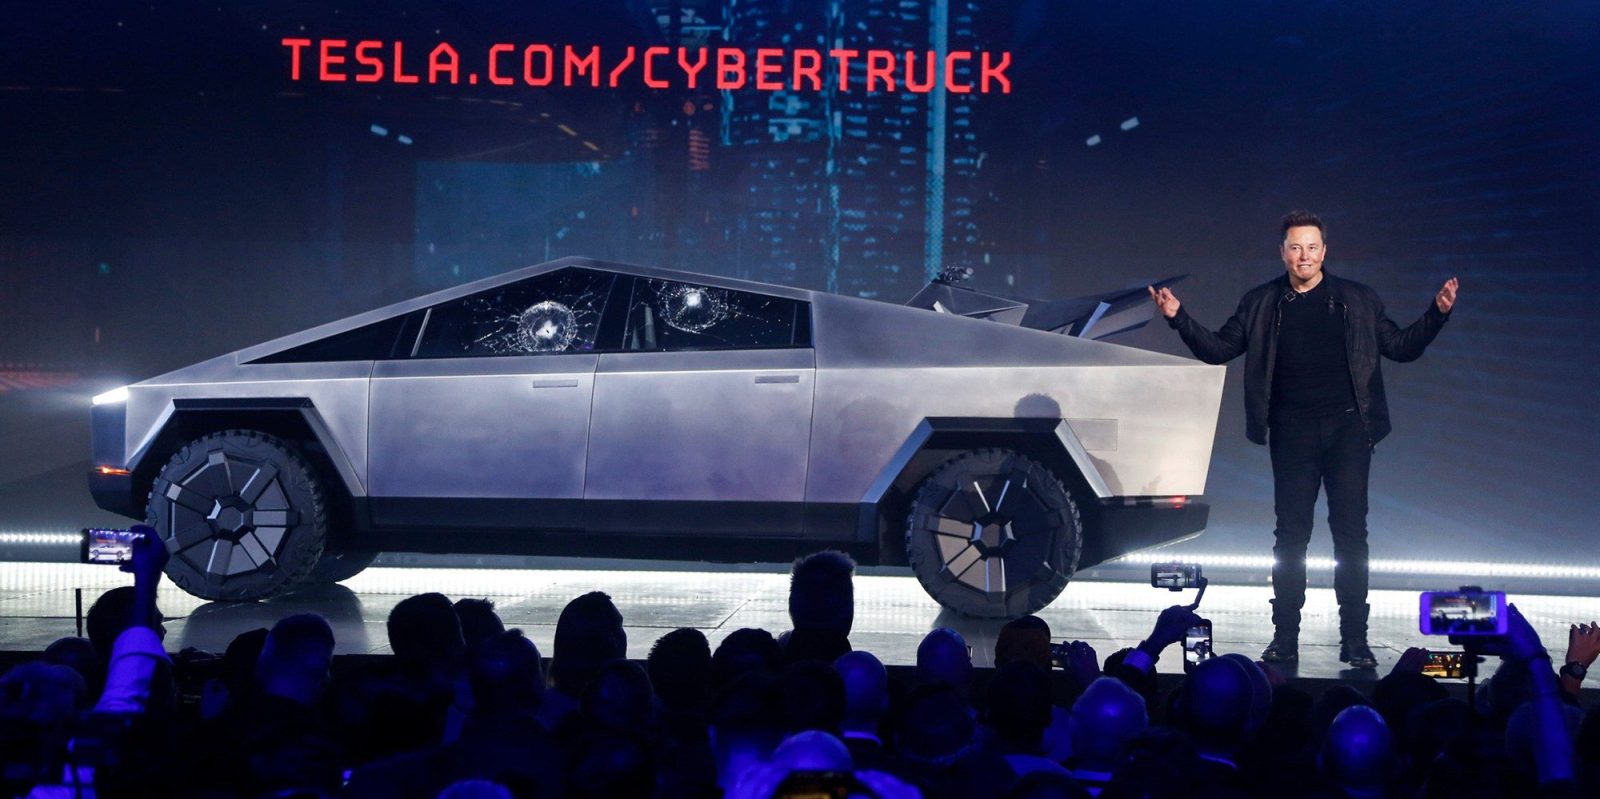 Tesla Cybertruck window